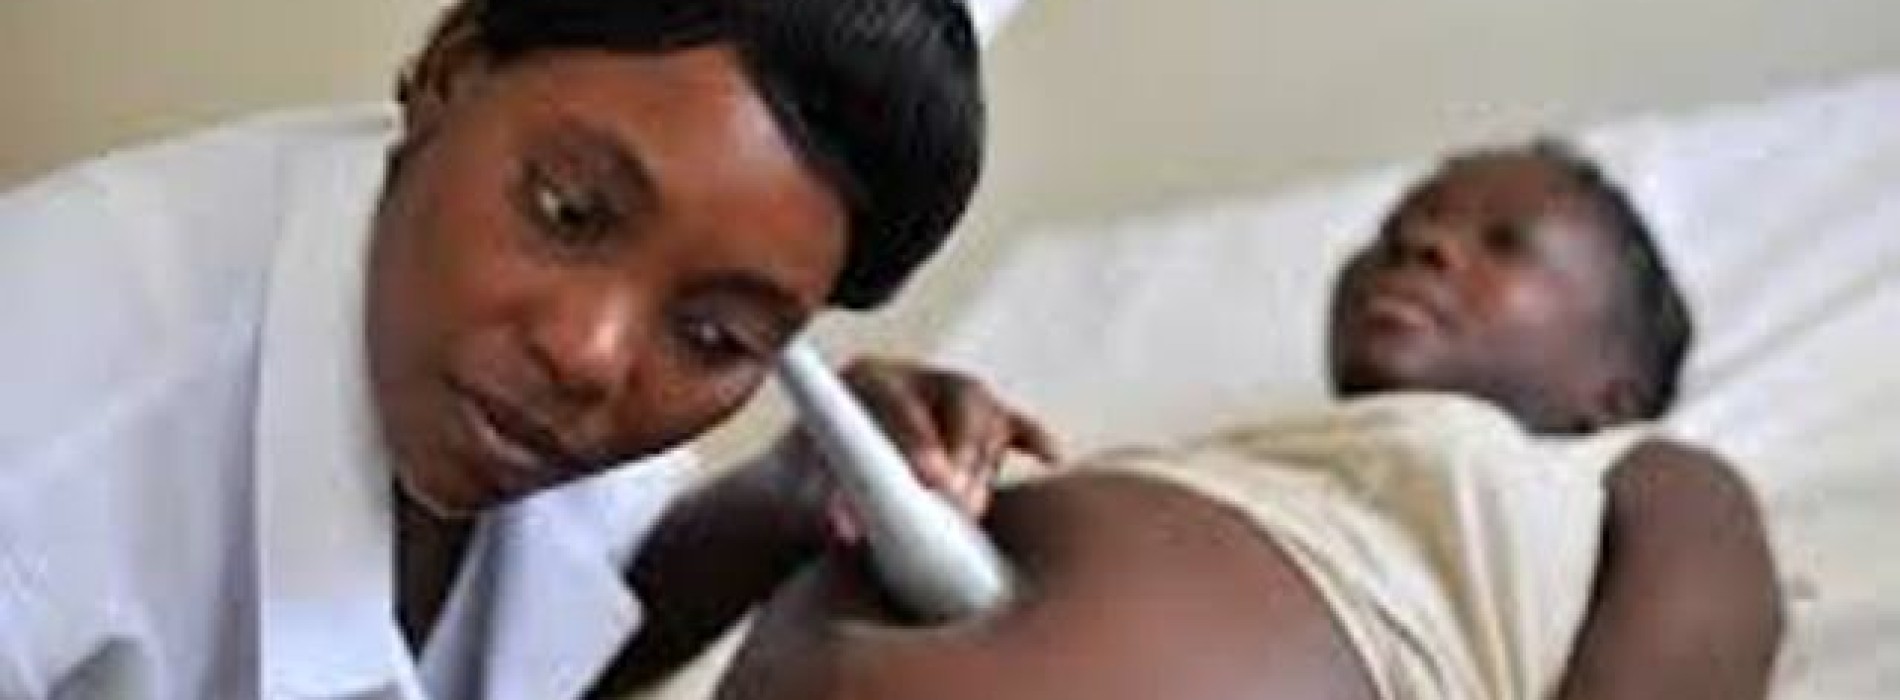 Maternal deaths declines worldwide – UN Report